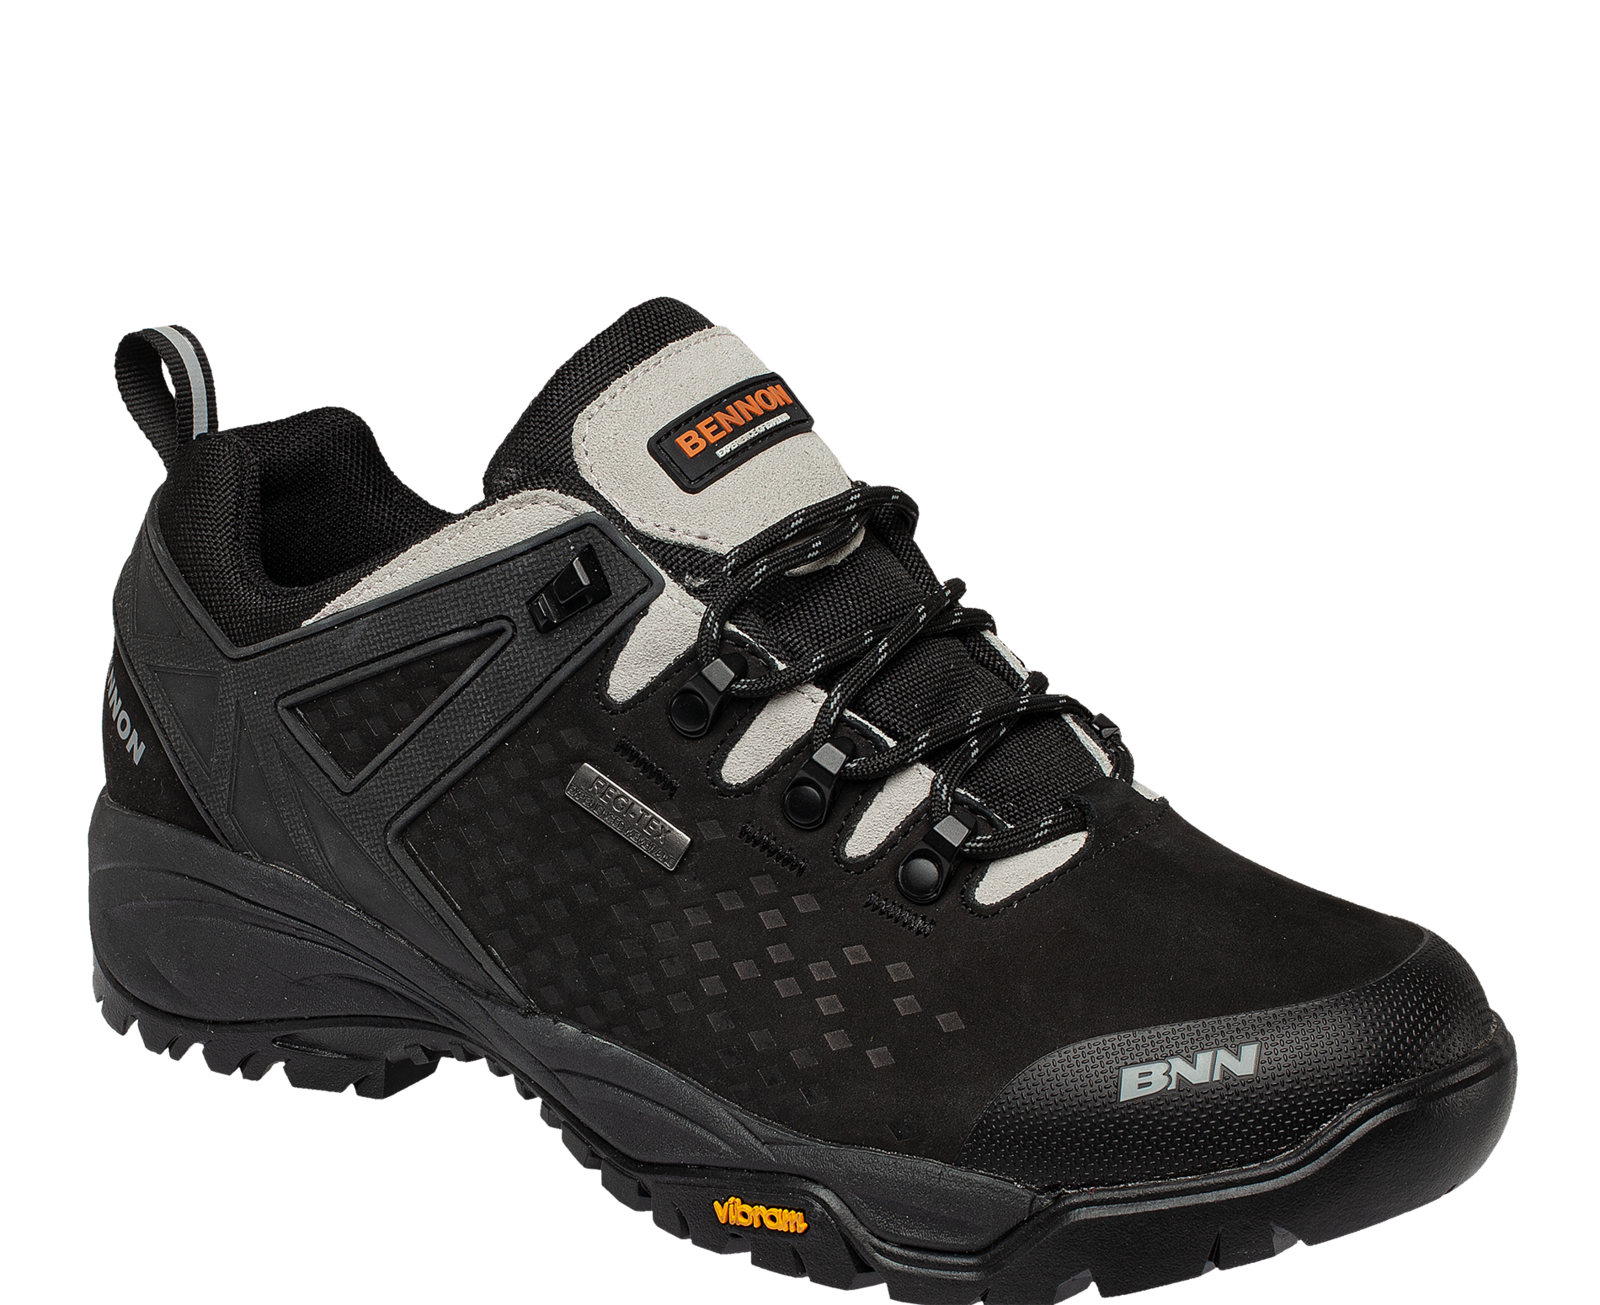 Outdoorová obuv Bennon Recado XTR O2 s membránou - veľkosť: 43, farba: čierna